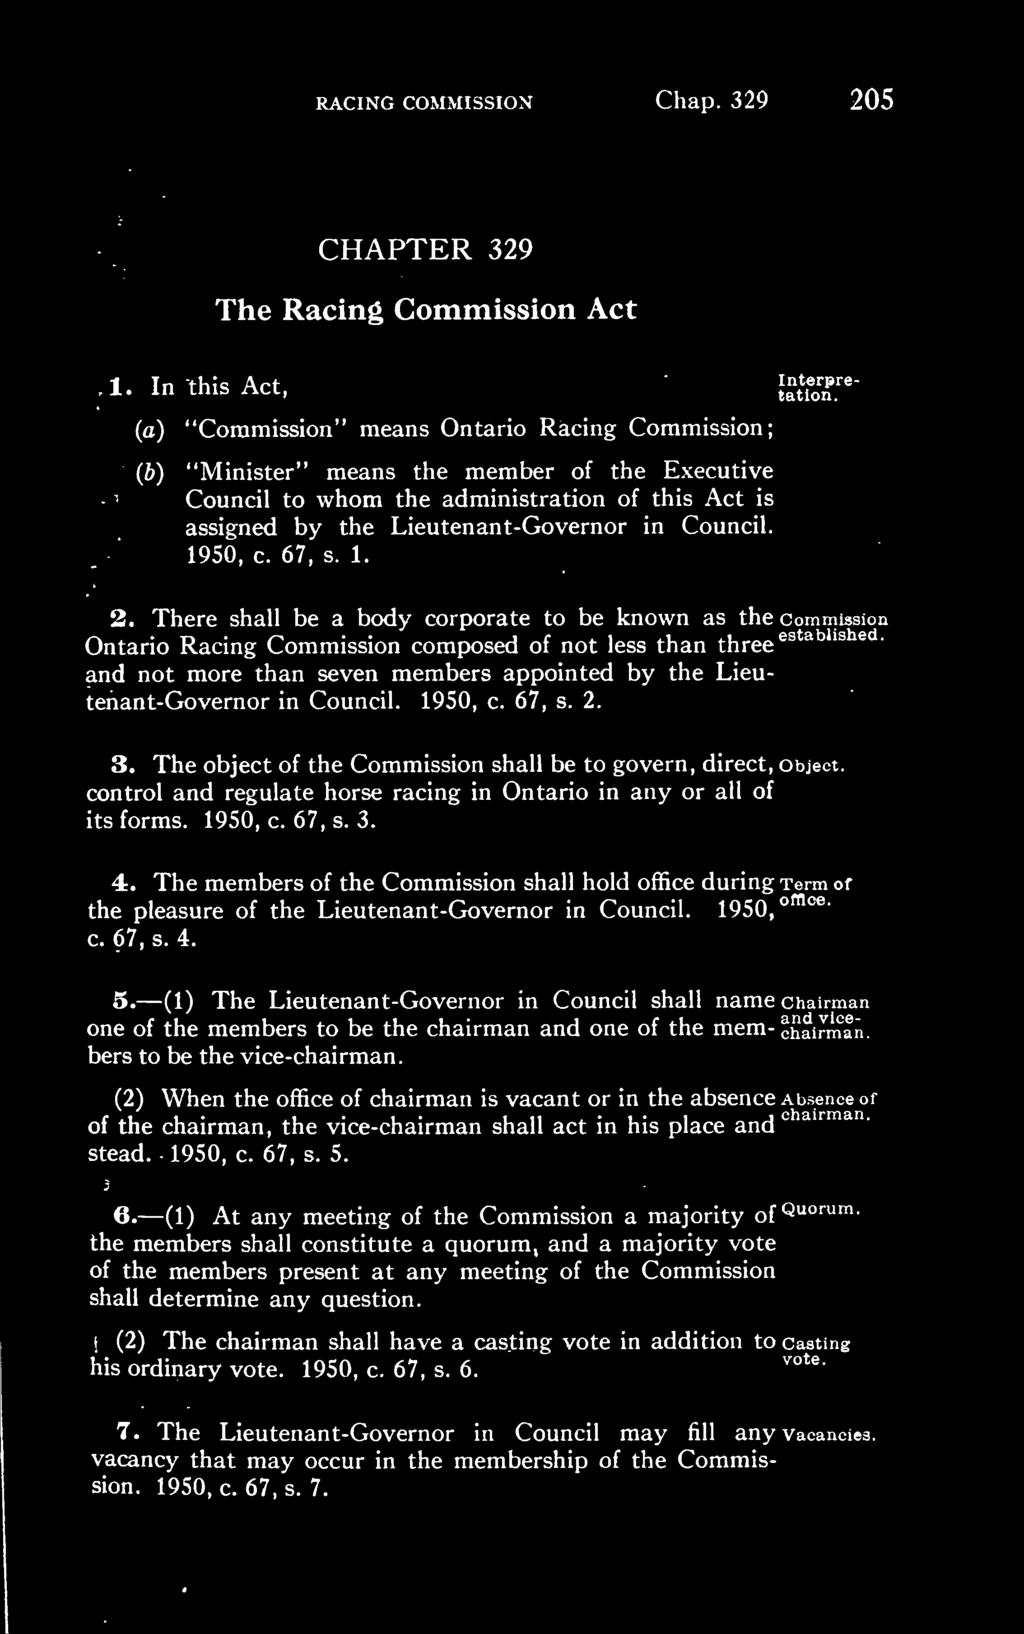 Council. 1950, c. 67, s. 1. 2.